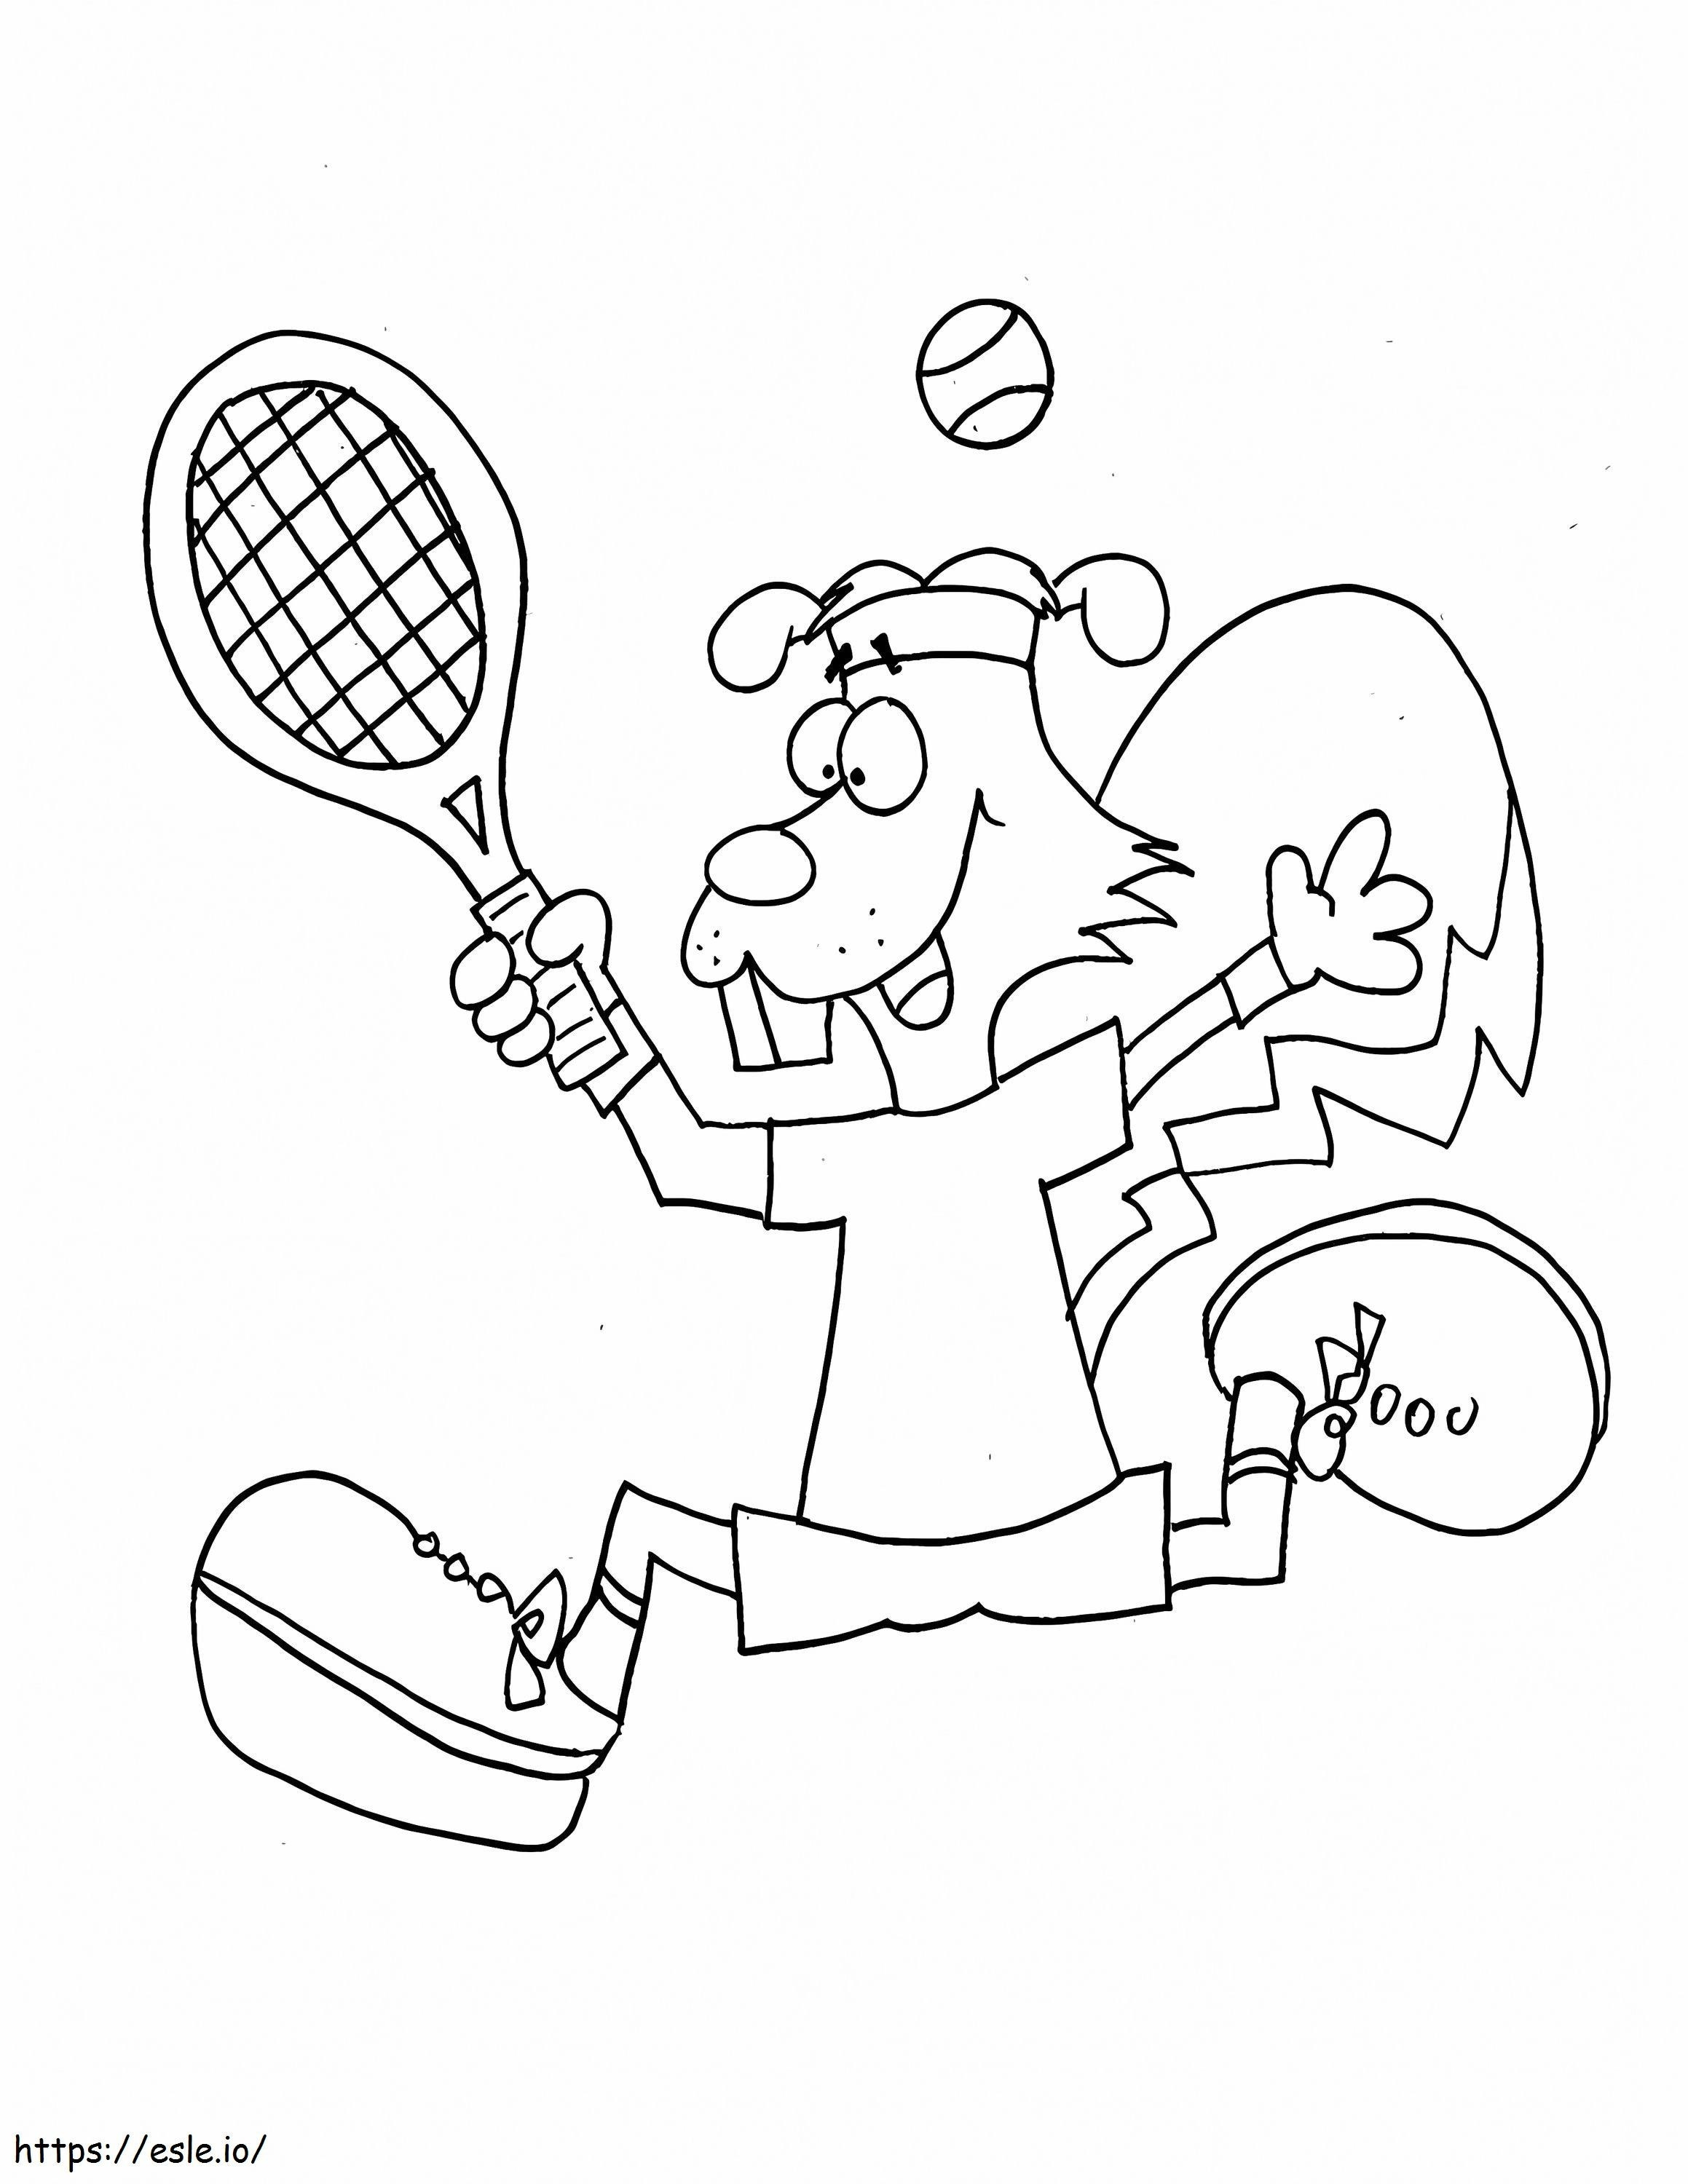  Max Tennis ausmalbilder